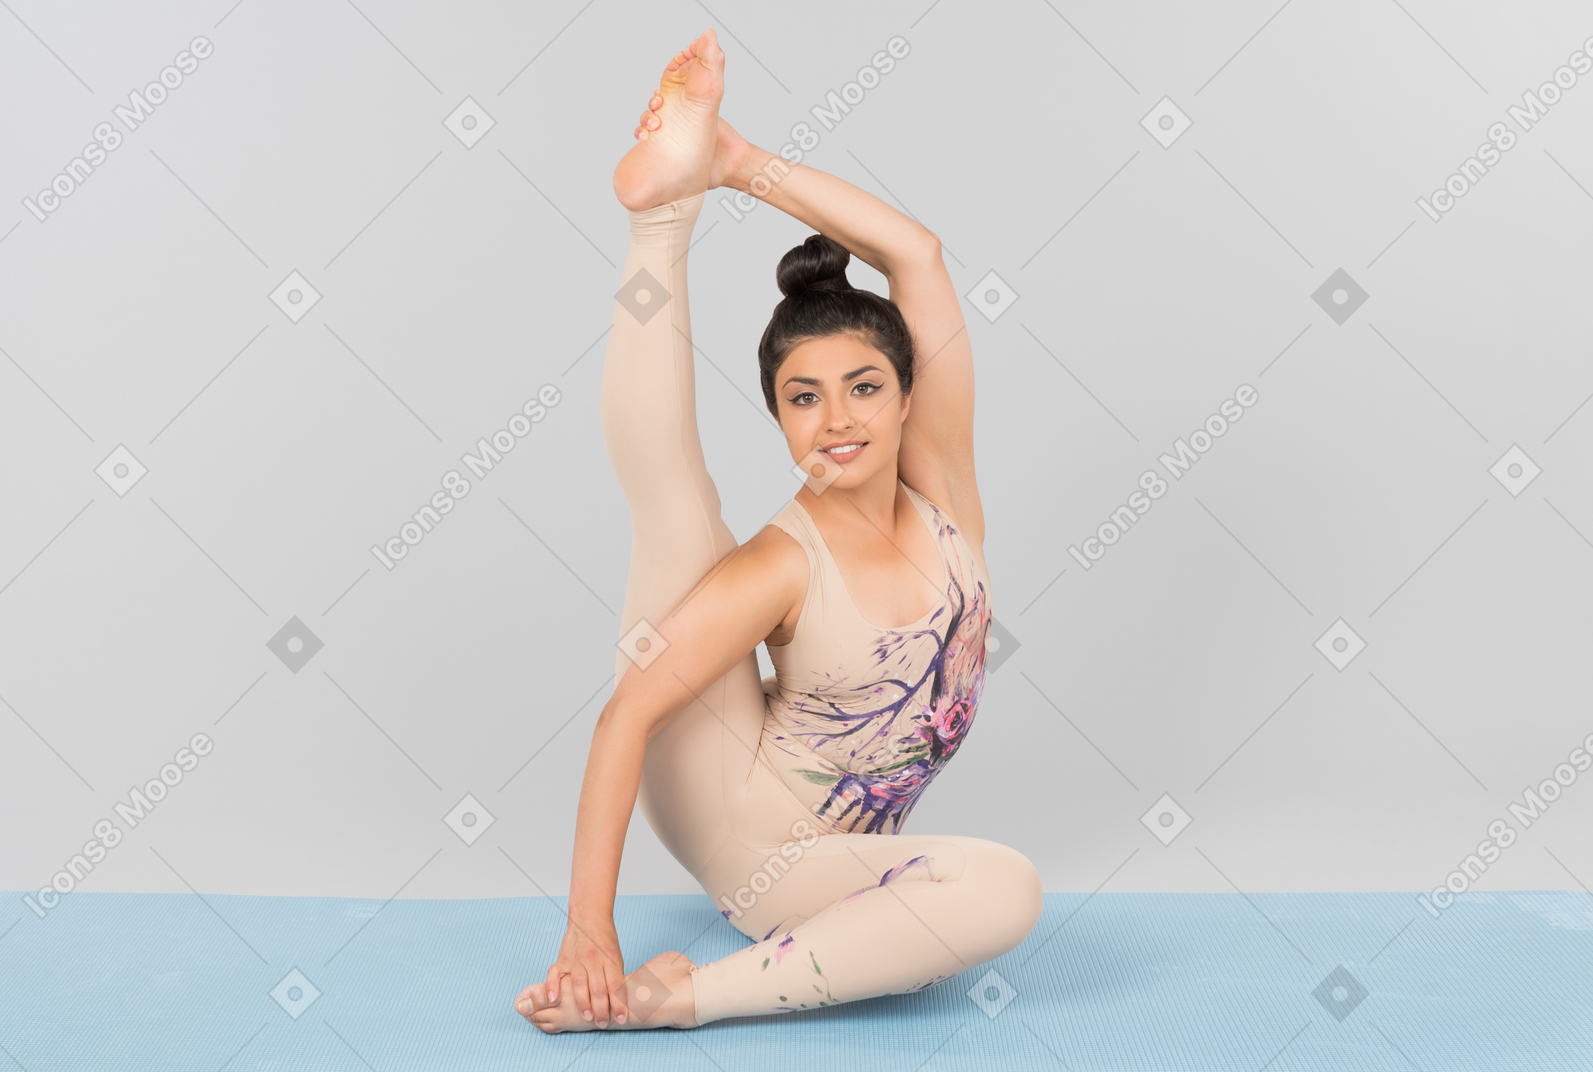 Junge indische turnerin sitzt auf einer yogamatte mit einem bein und berührt ihren zeh mit einer hand